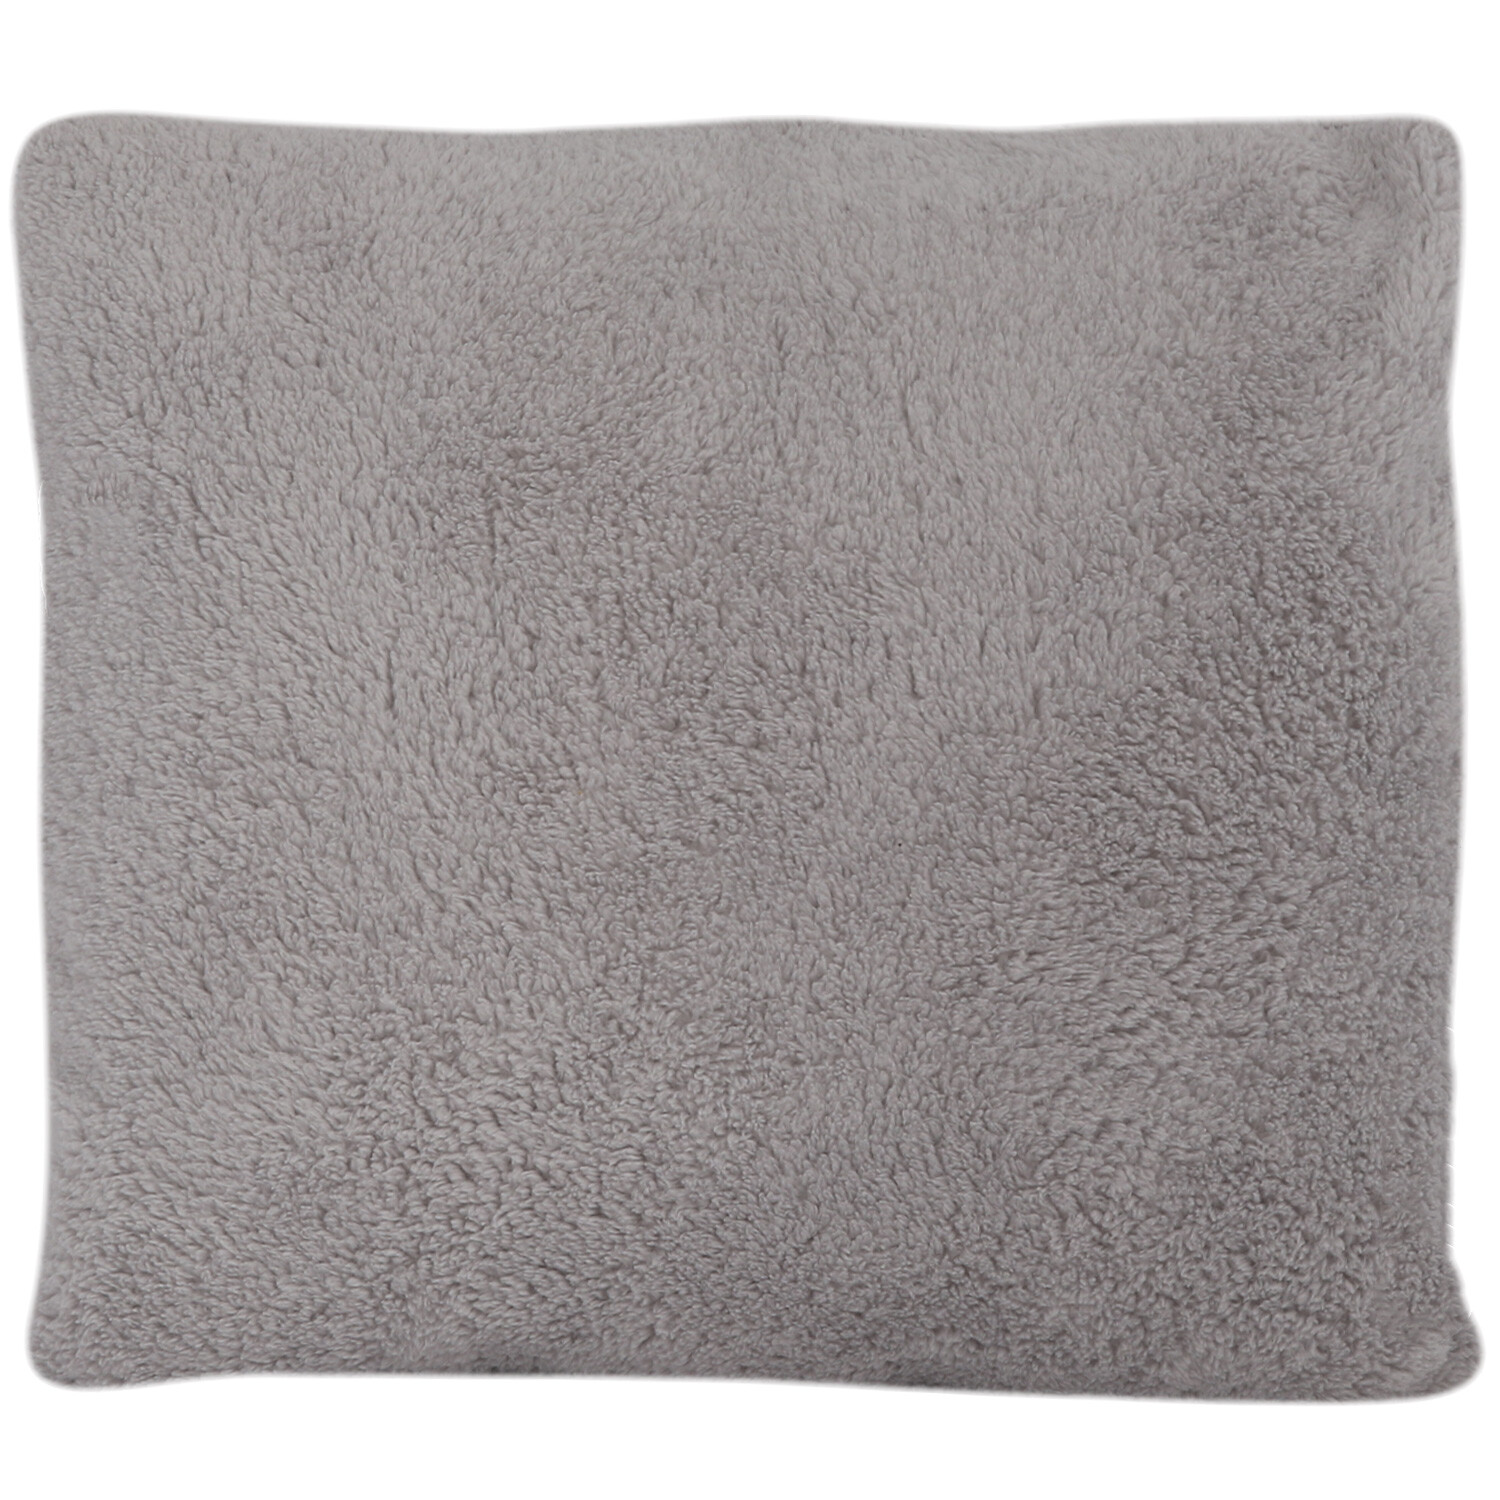 Silver Teddy Fleece Soft Cushion 45 x 45cm Image 1